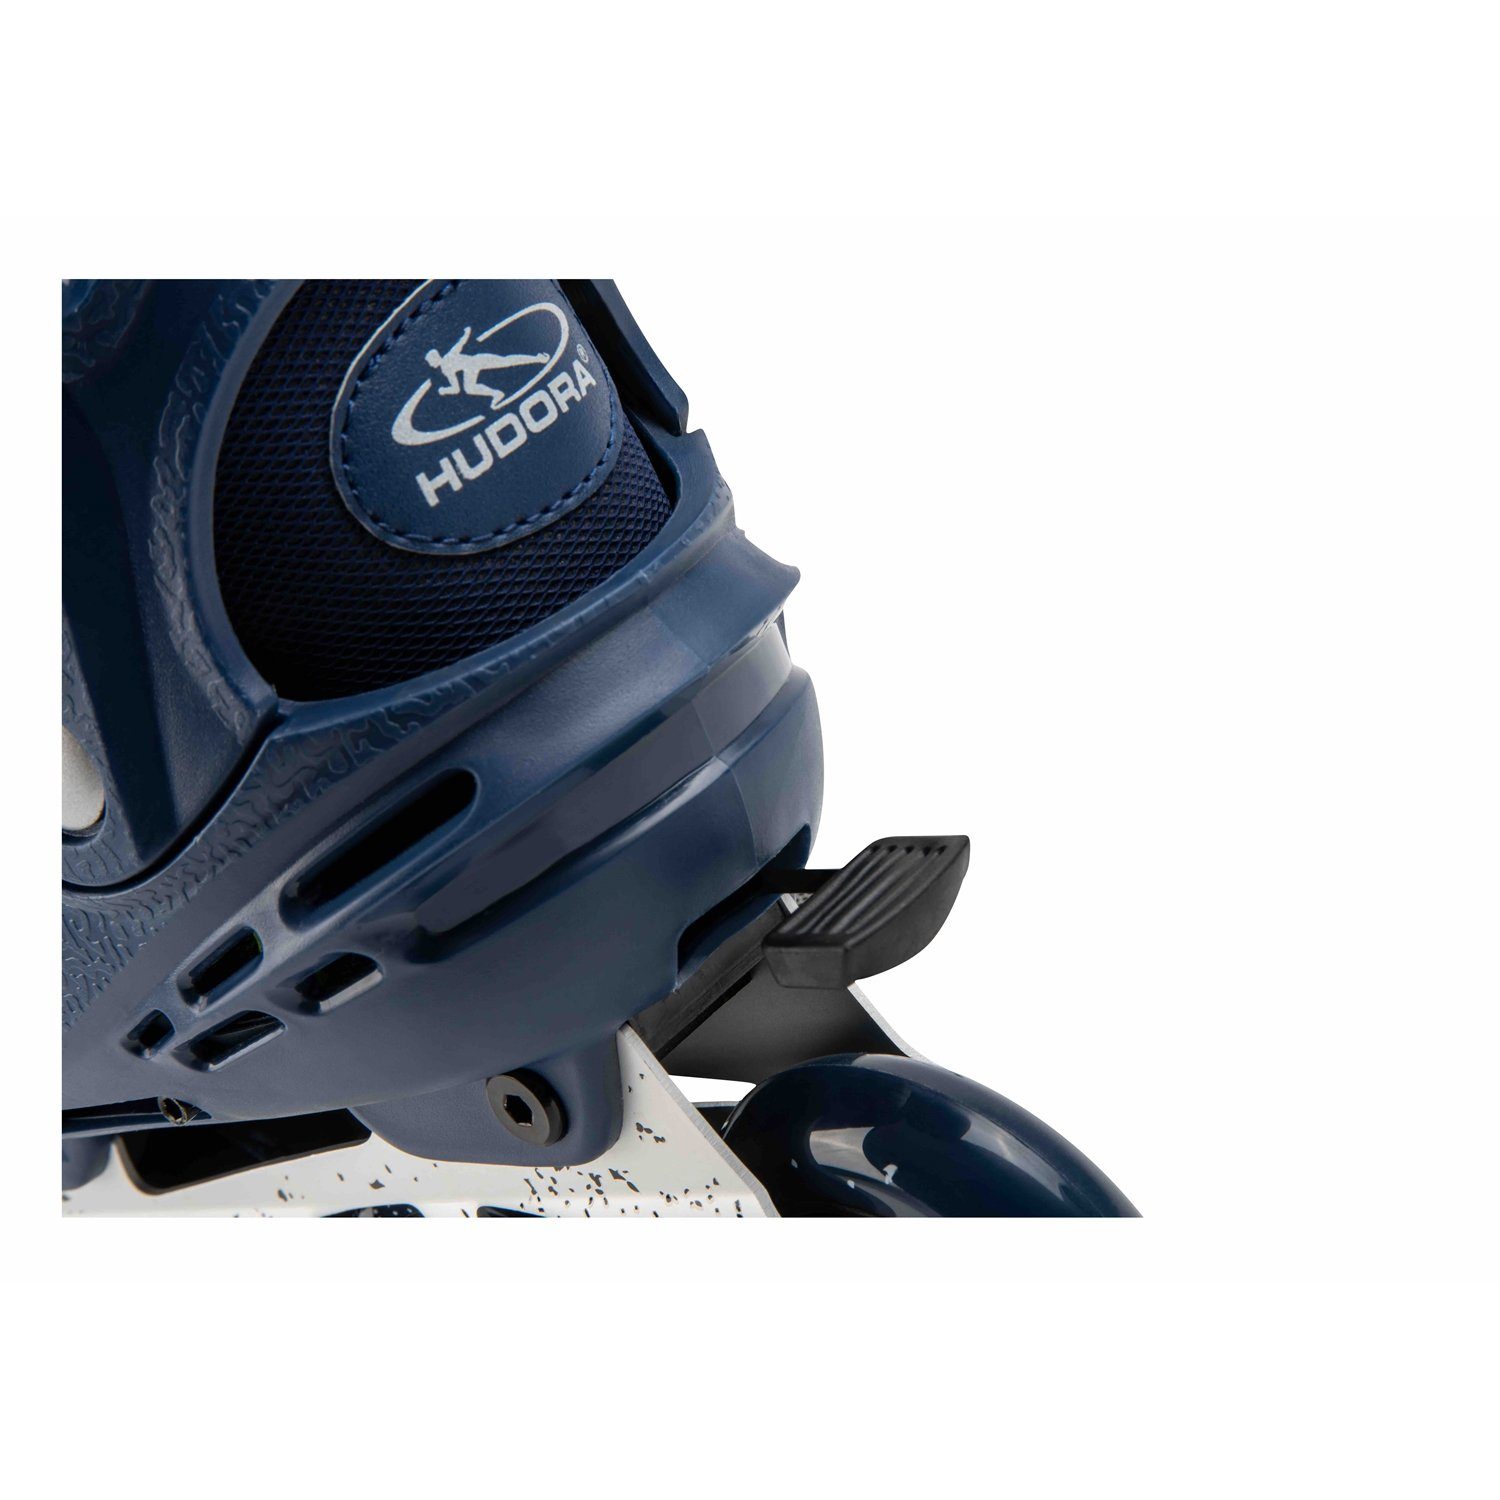 Hudora Scooter 28451 Comfort, Skates Gr.35-40 deep Inline Blue